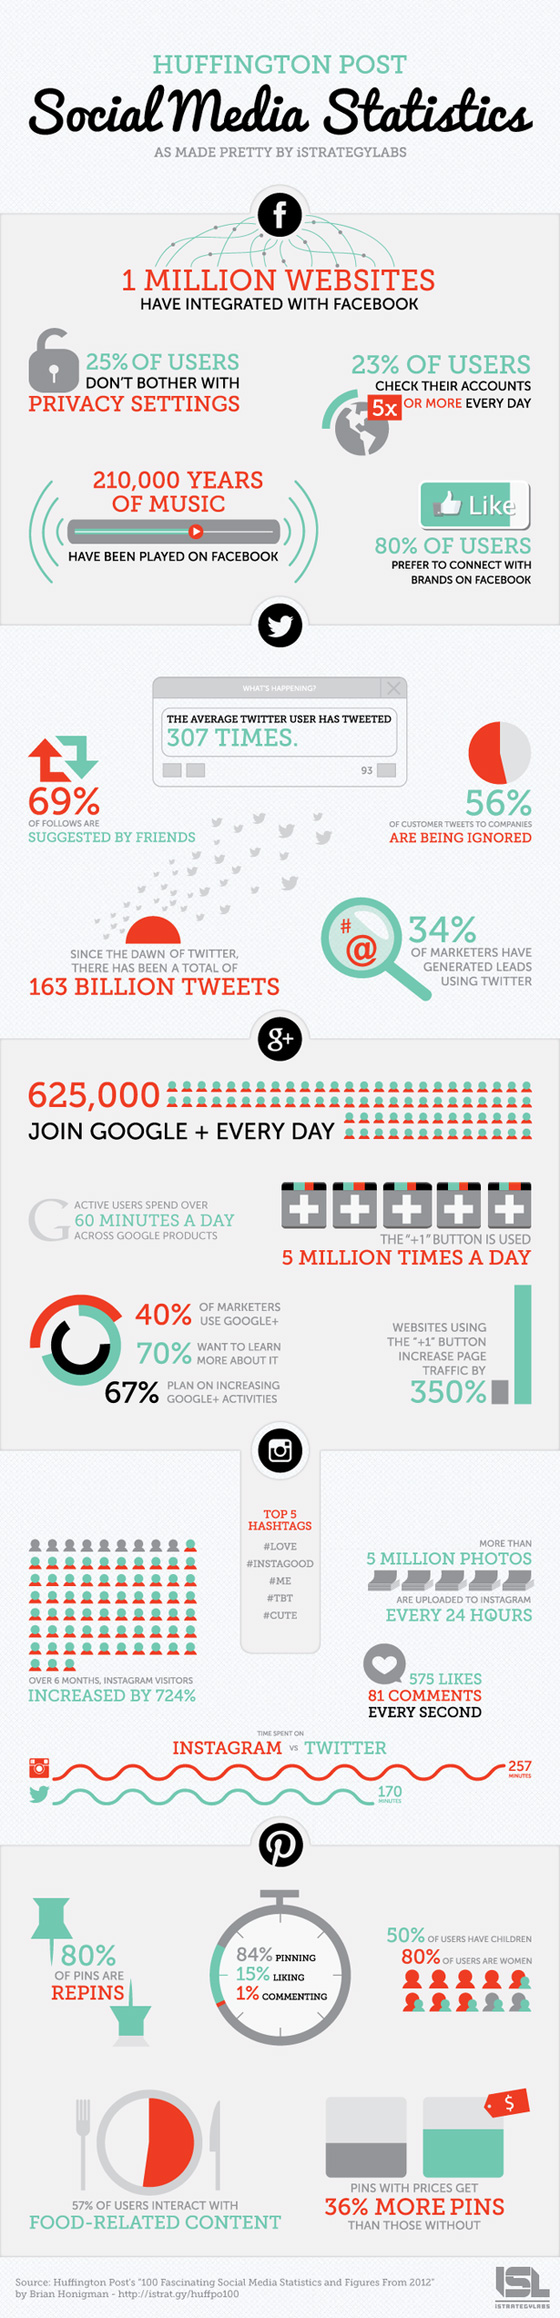 2013-social-media-stats